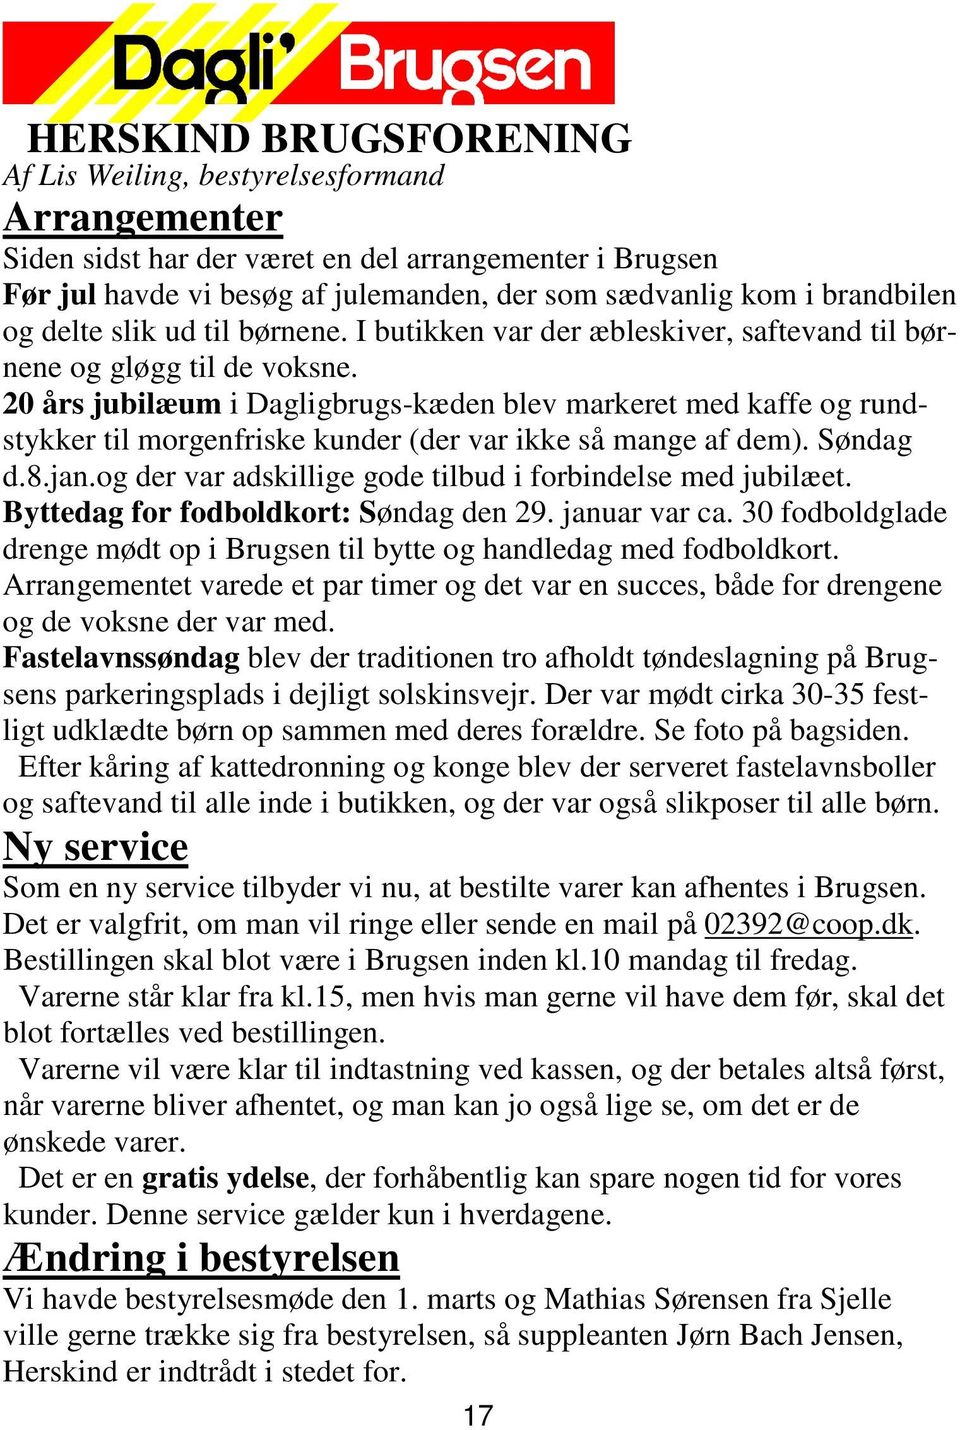 20 års jubilæum i Dagligbrugs-kæden blev markeret med kaffe og rundstykker til morgenfriske kunder (der var ikke så mange af dem). Søndag d.8.jan.